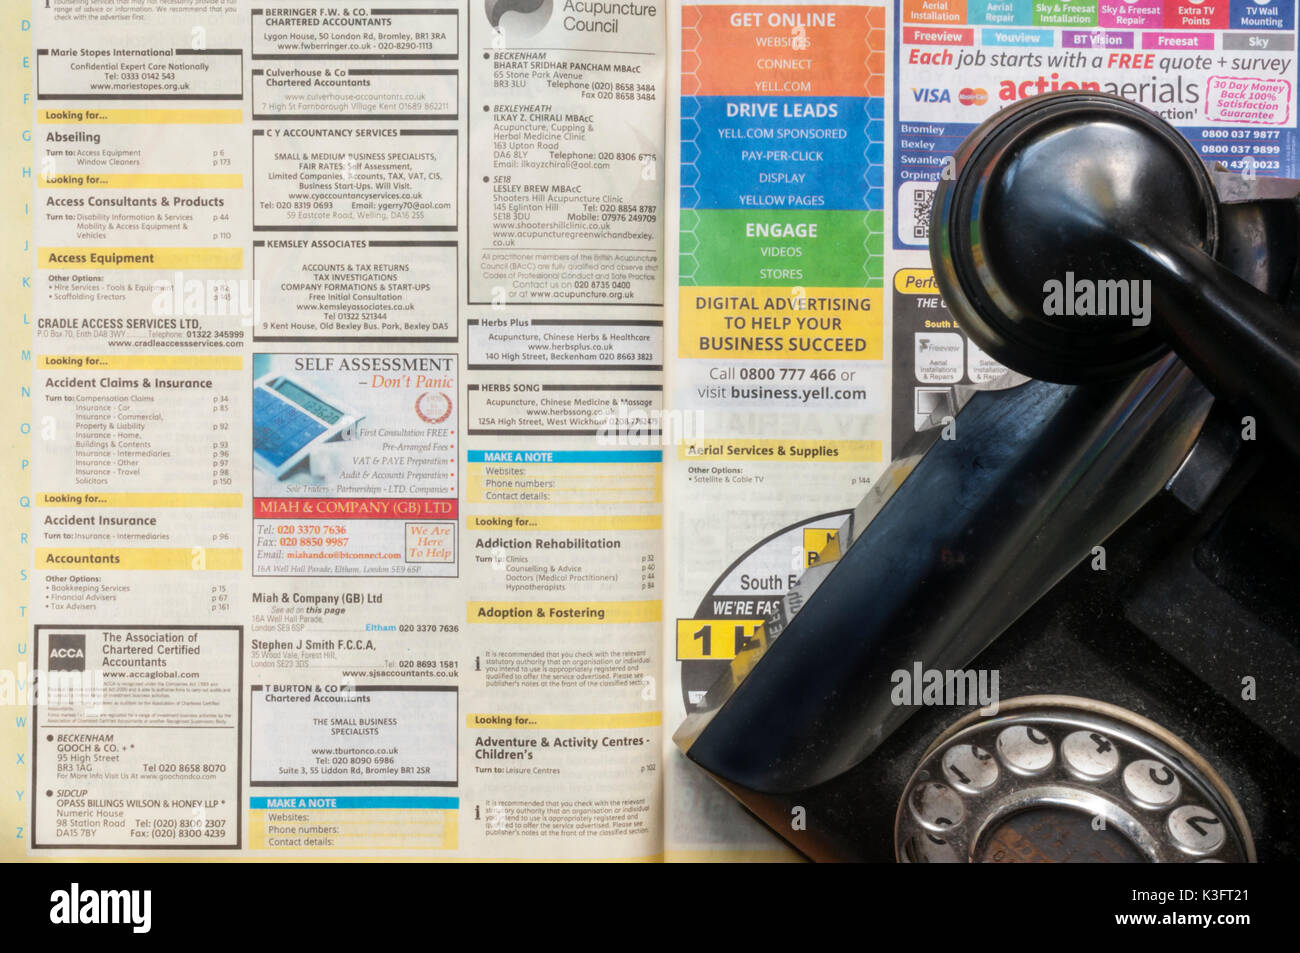 Un vieux téléphone sur une copie de Pages jaunes qui sont à arrêter la publication sous forme imprimée en 2018 Banque D'Images